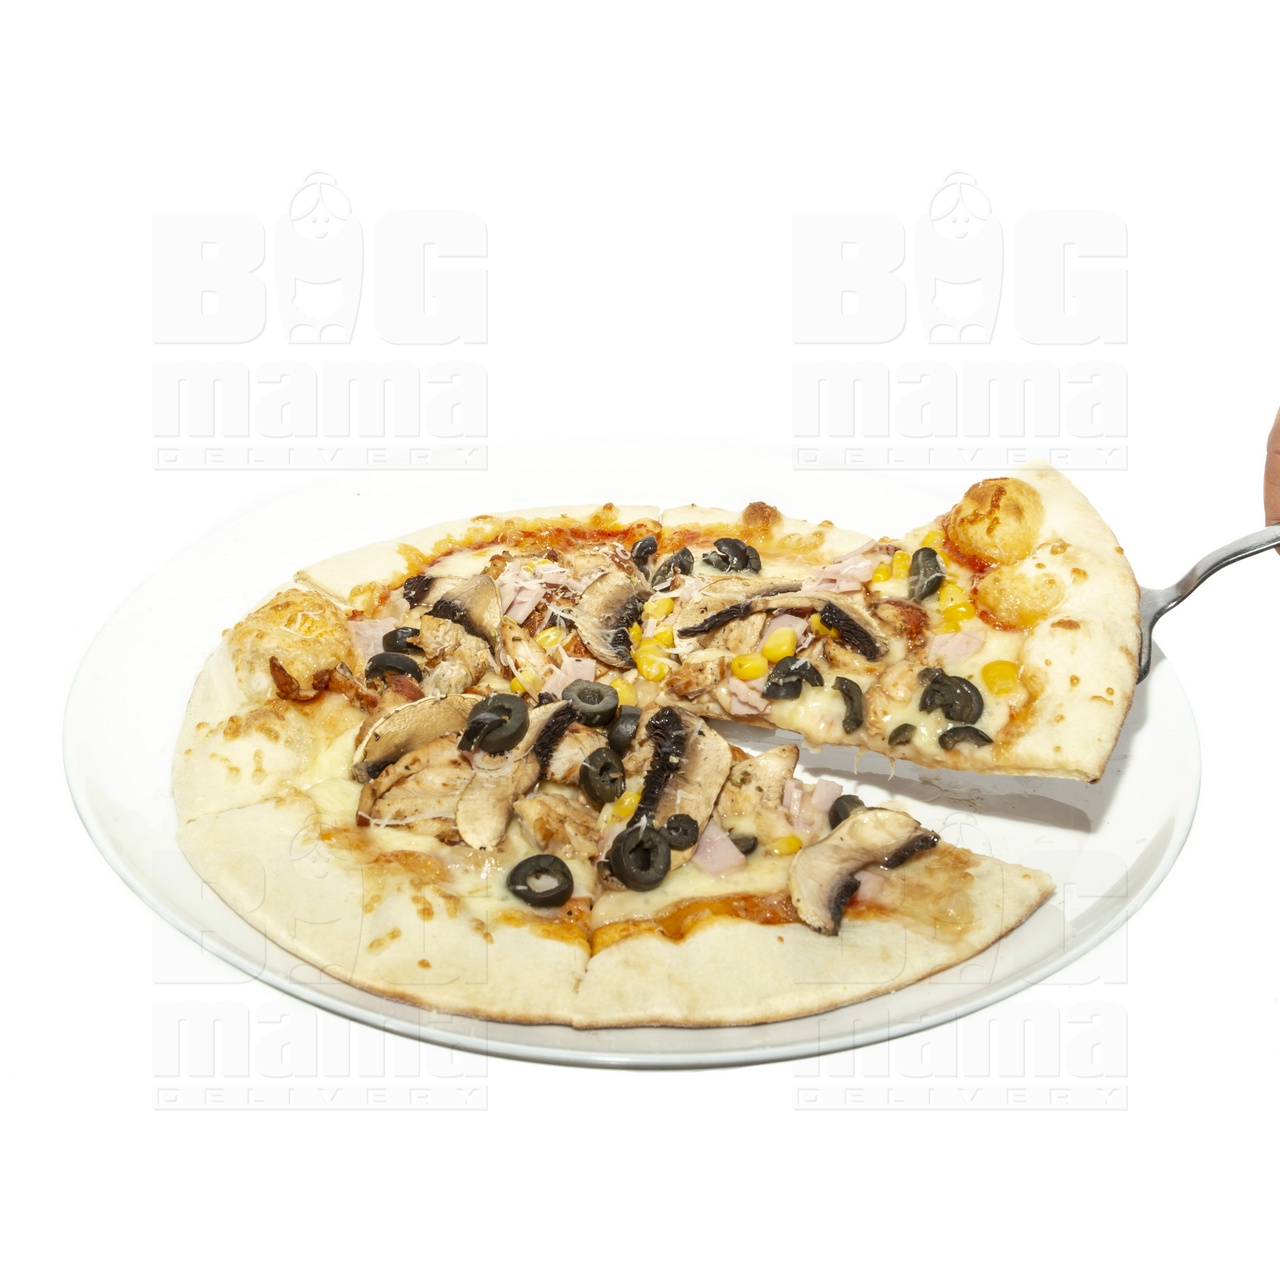 Product #208 image - Pizza Pollo e Funghi